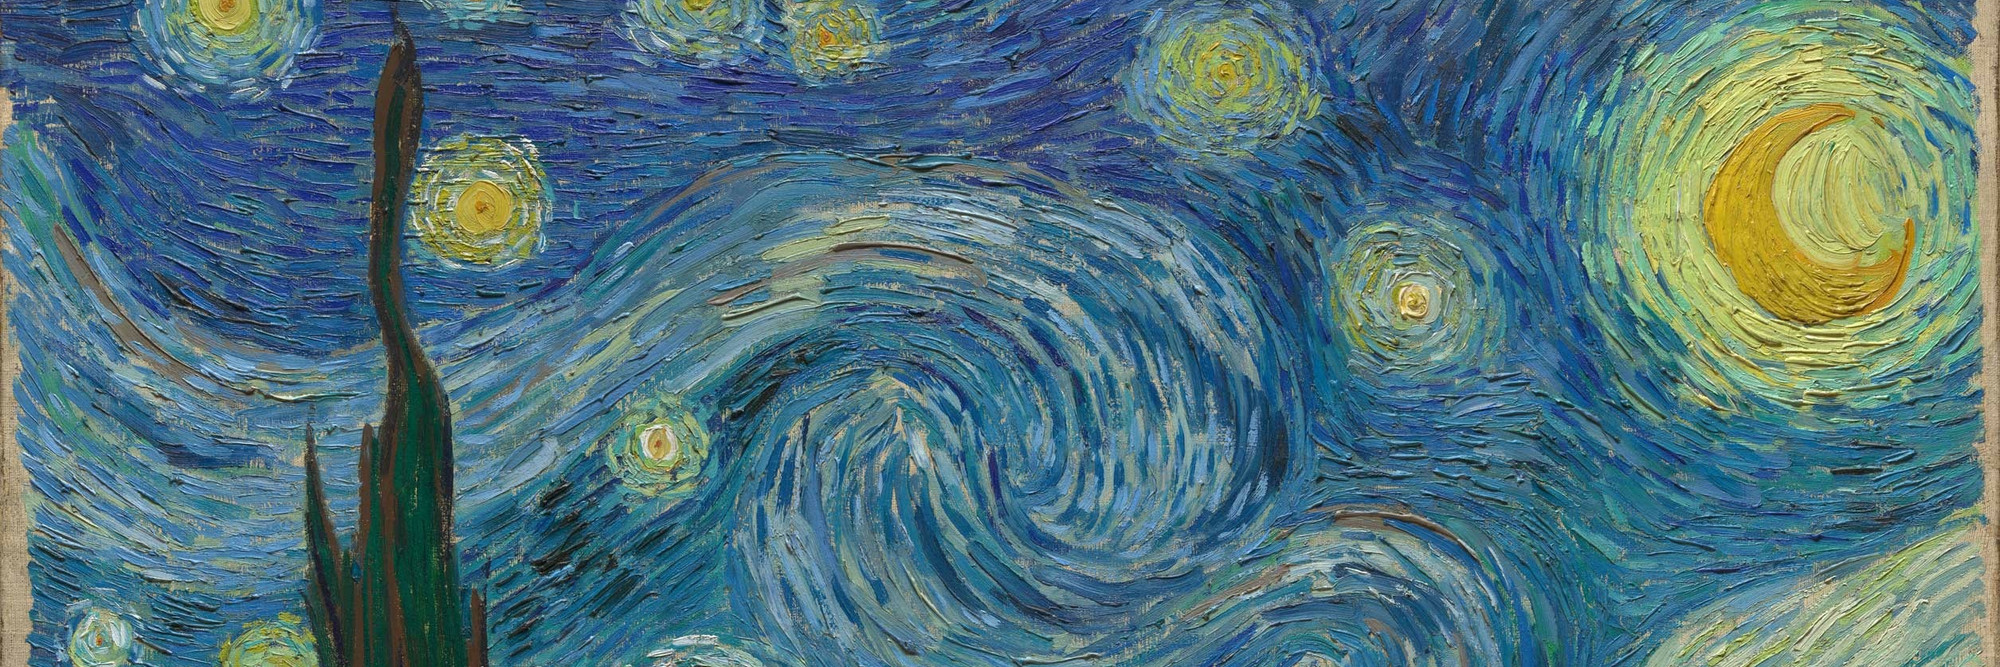 Virtual Views: Gogh's Starry Night | MoMA